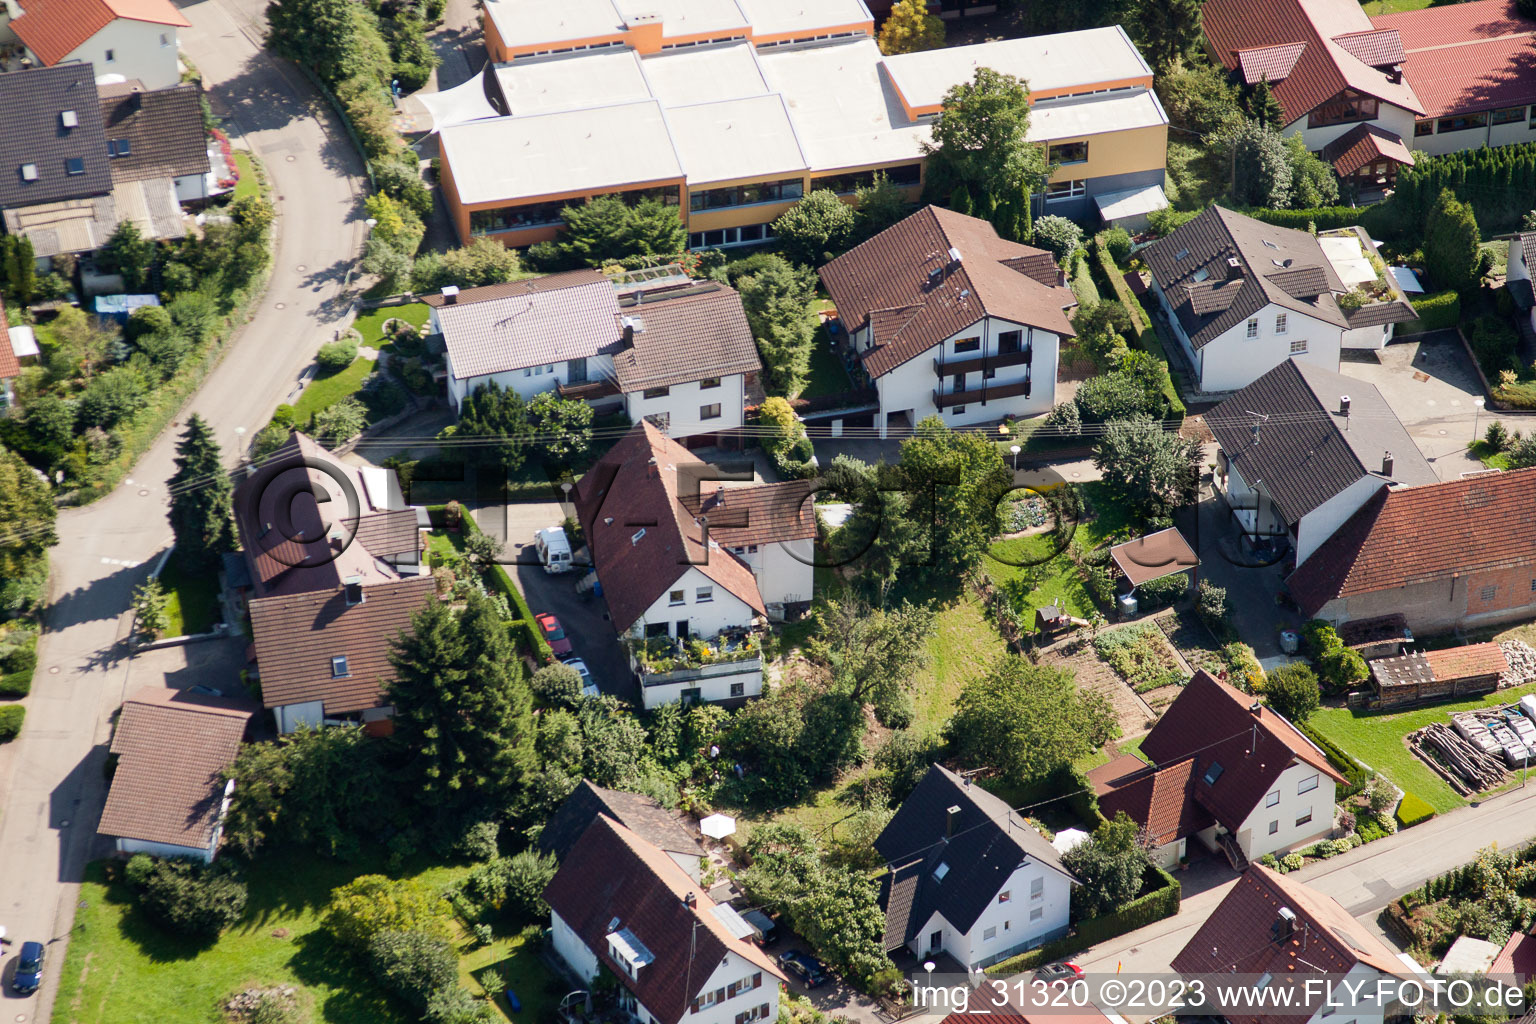 Ortsteil Gallenbach in Baden-Baden im Bundesland Baden-Württemberg, Deutschland aus der Luft betrachtet